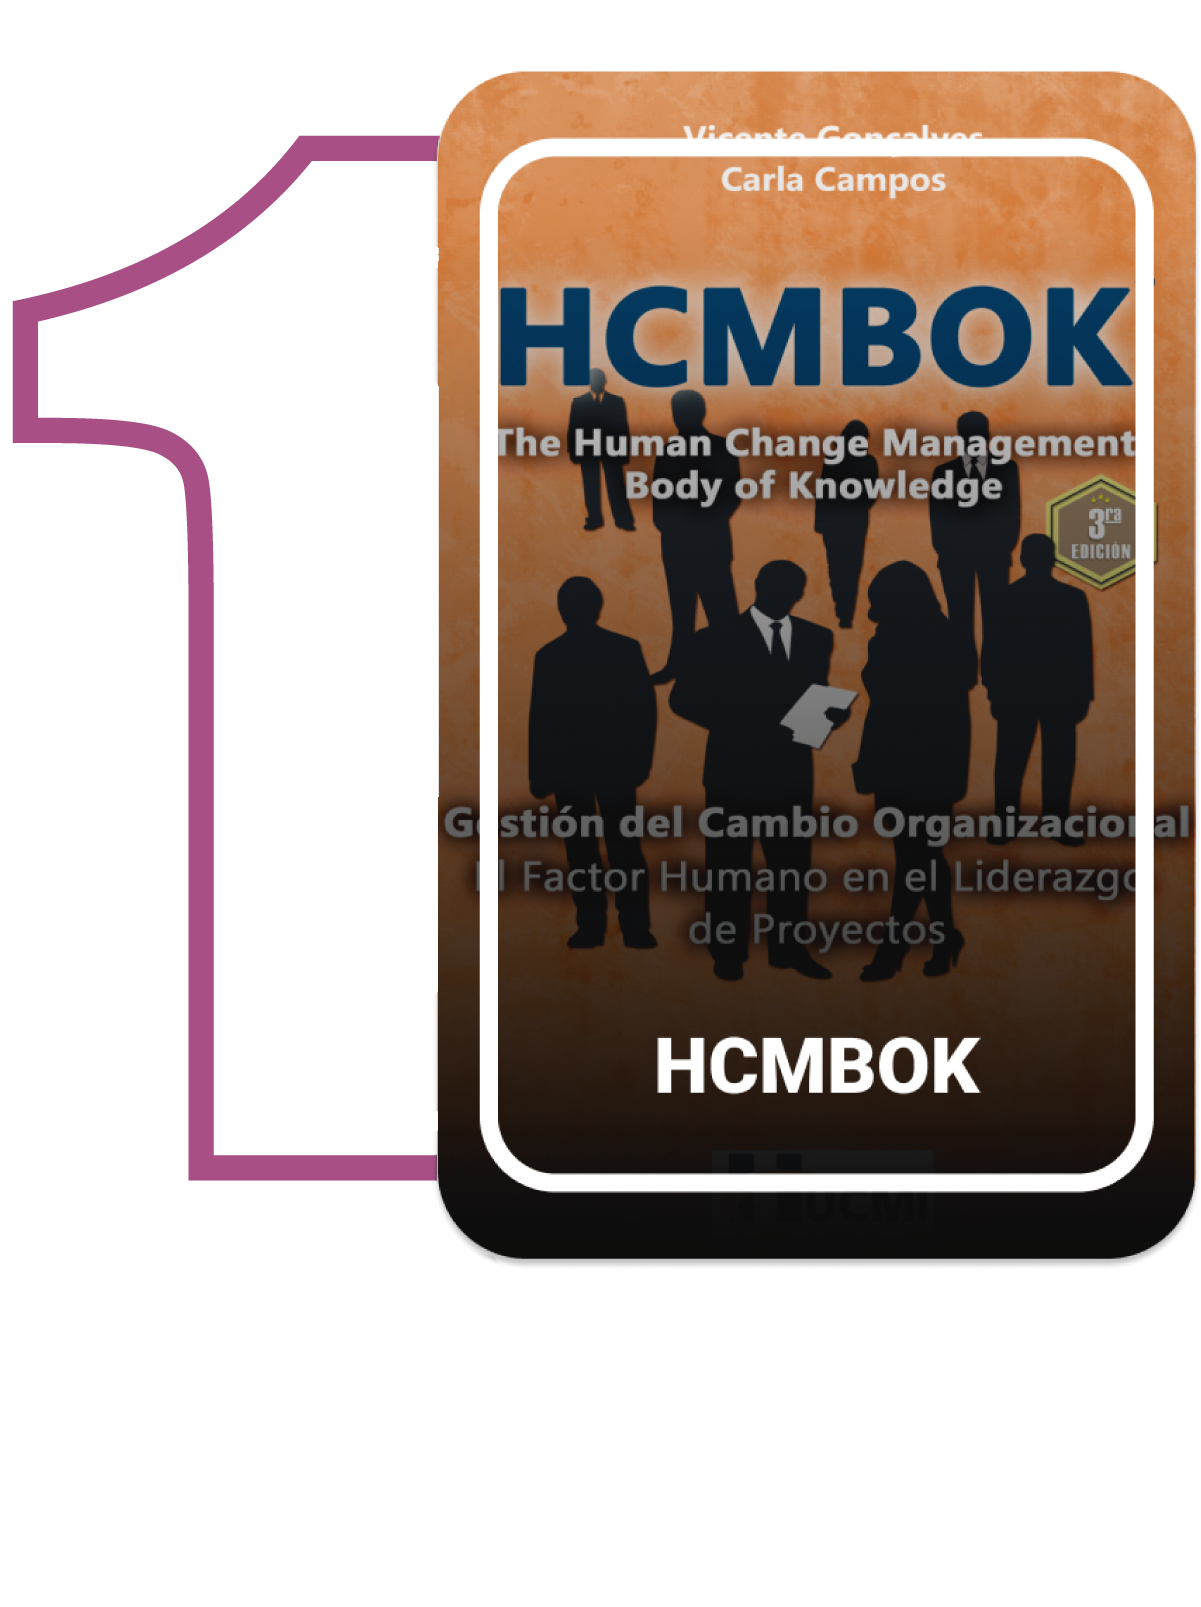 HCMBOK certificación, gestión del cambio management change uno